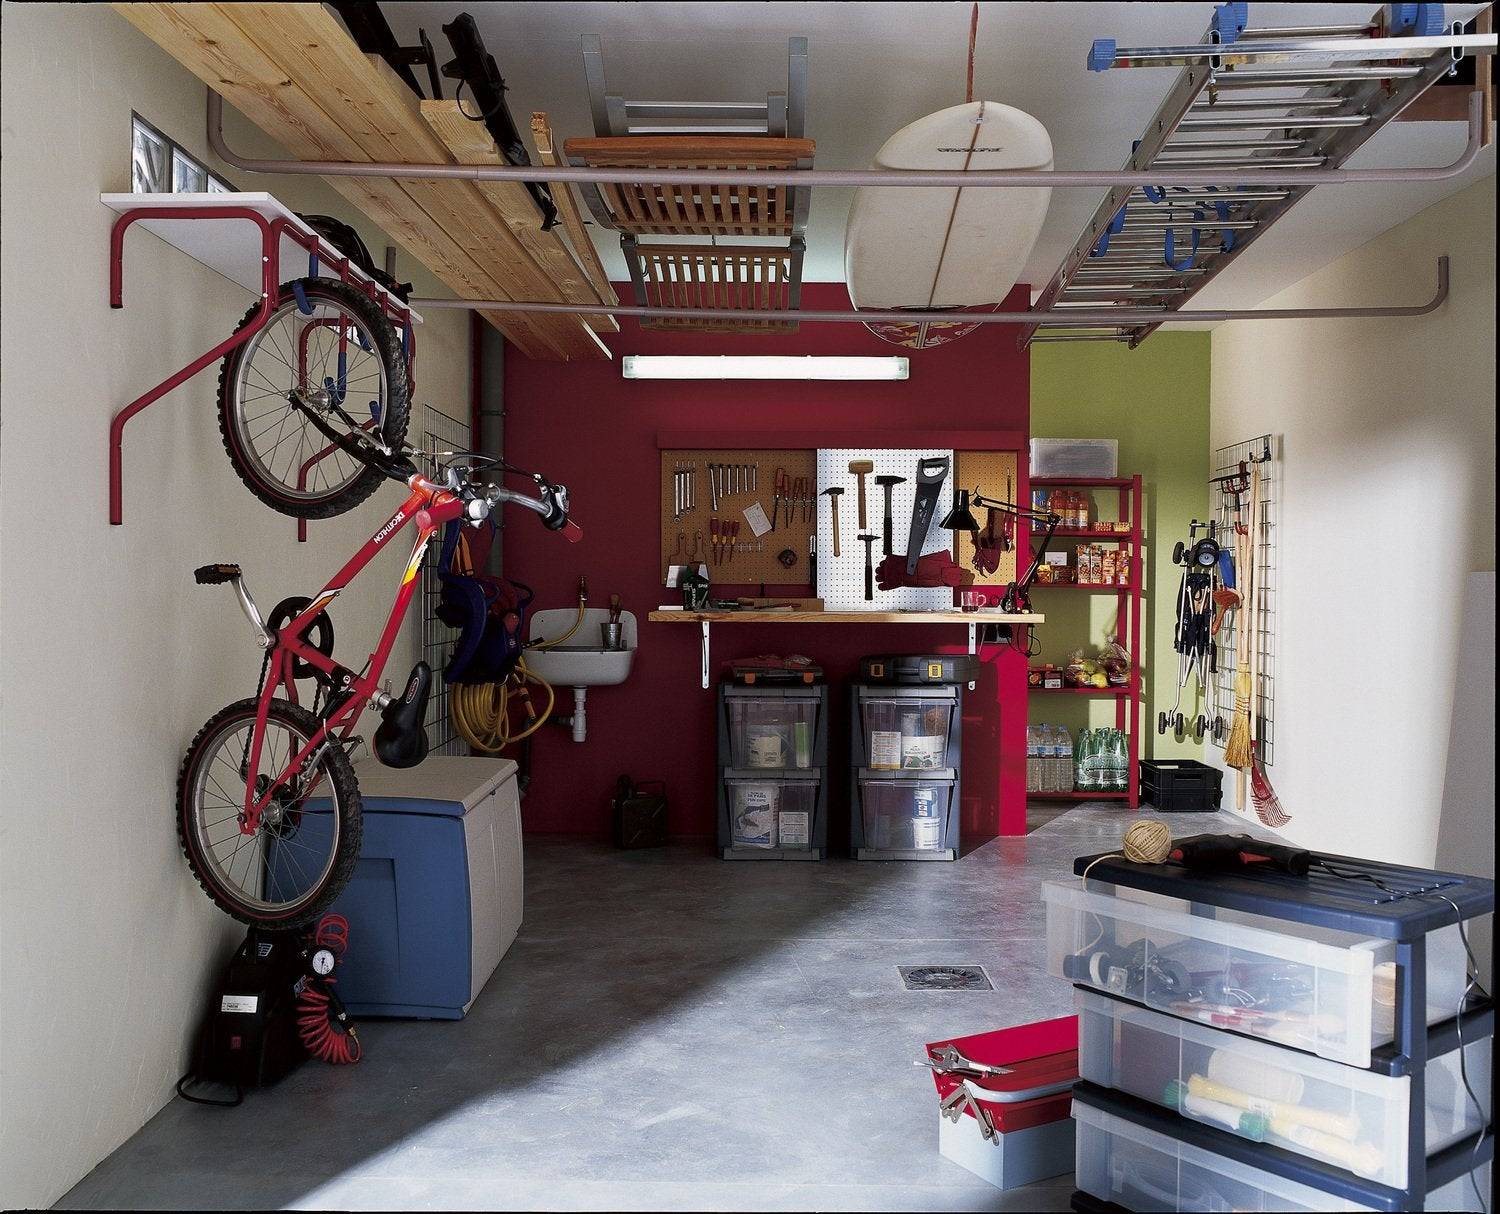 Самоделки для гаража (110 фото + видео): идеи для мастера, гаражные приспособления своими руками, дизайн интерьера и обустройство рабочего места | как сделать своими руками